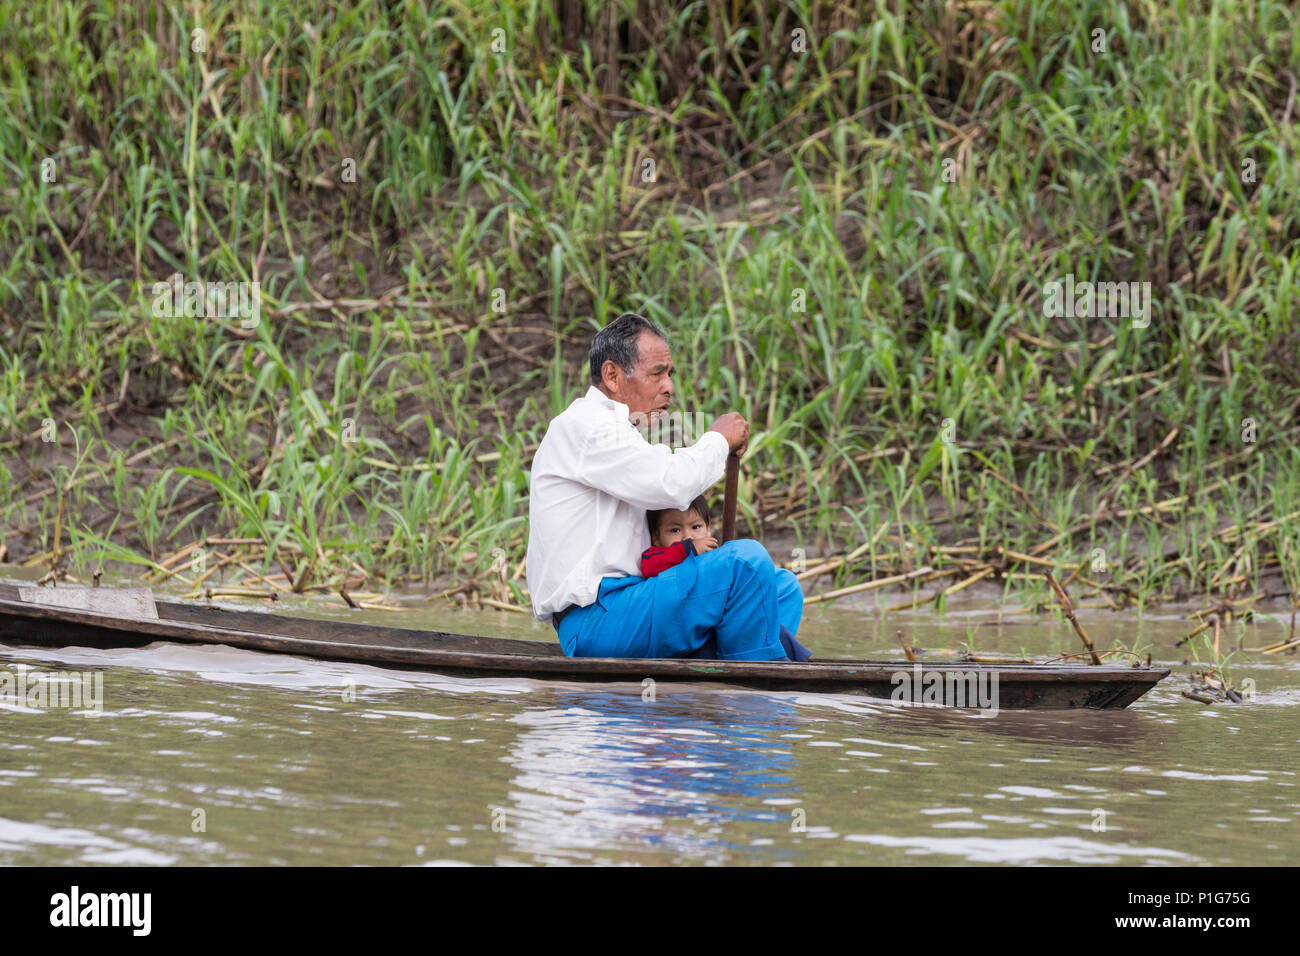 Hombre remando piragua, Puerto Miguel, Superior de la cuenca del río Amazonas, Loreto, Perú Foto de stock